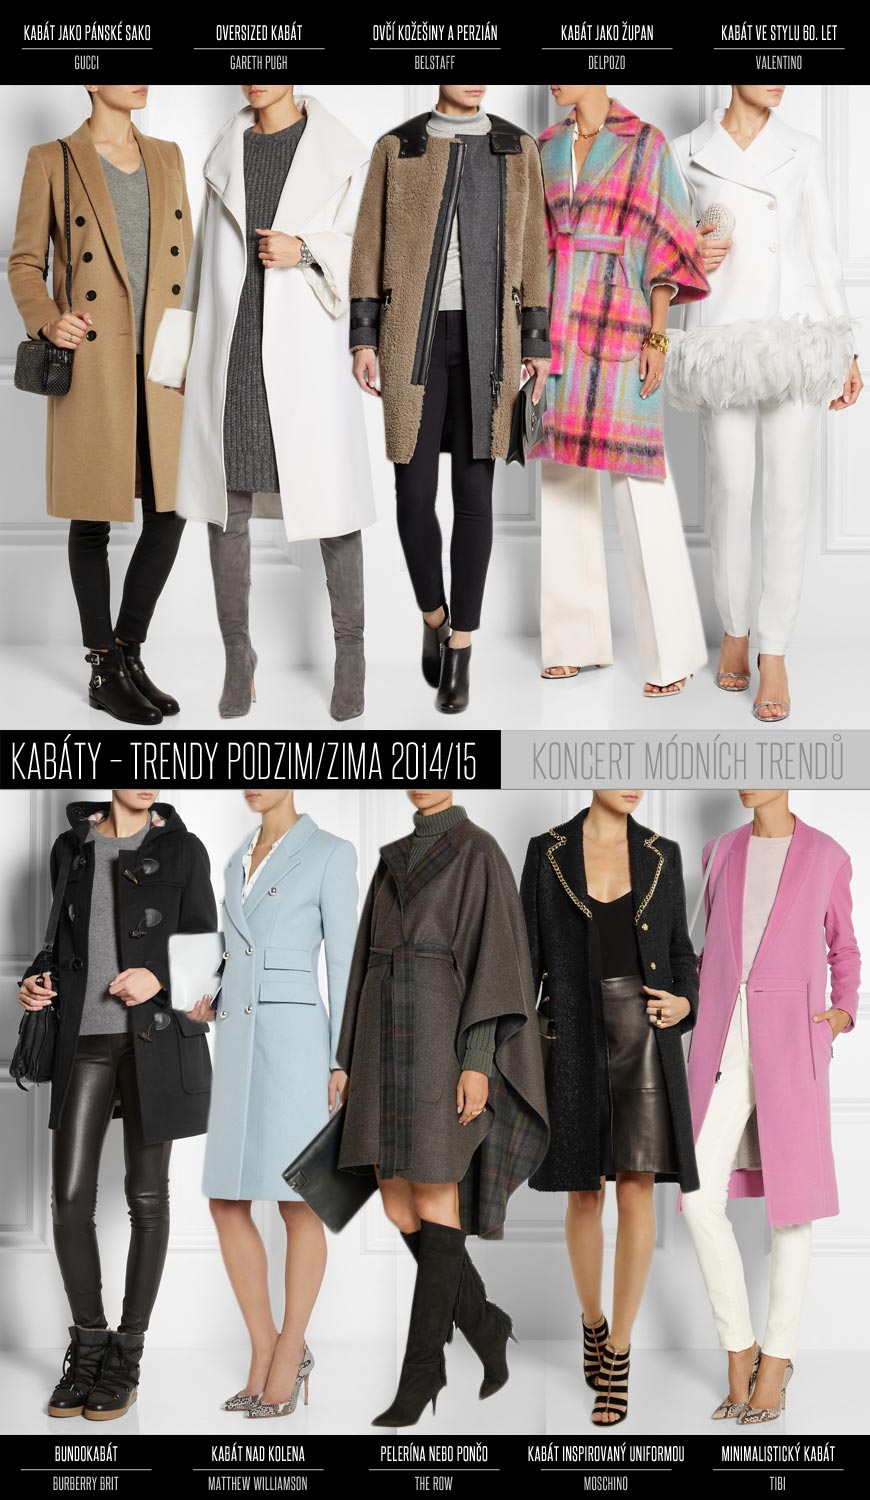 Kabáty – trendy podzim/zima 2014/15